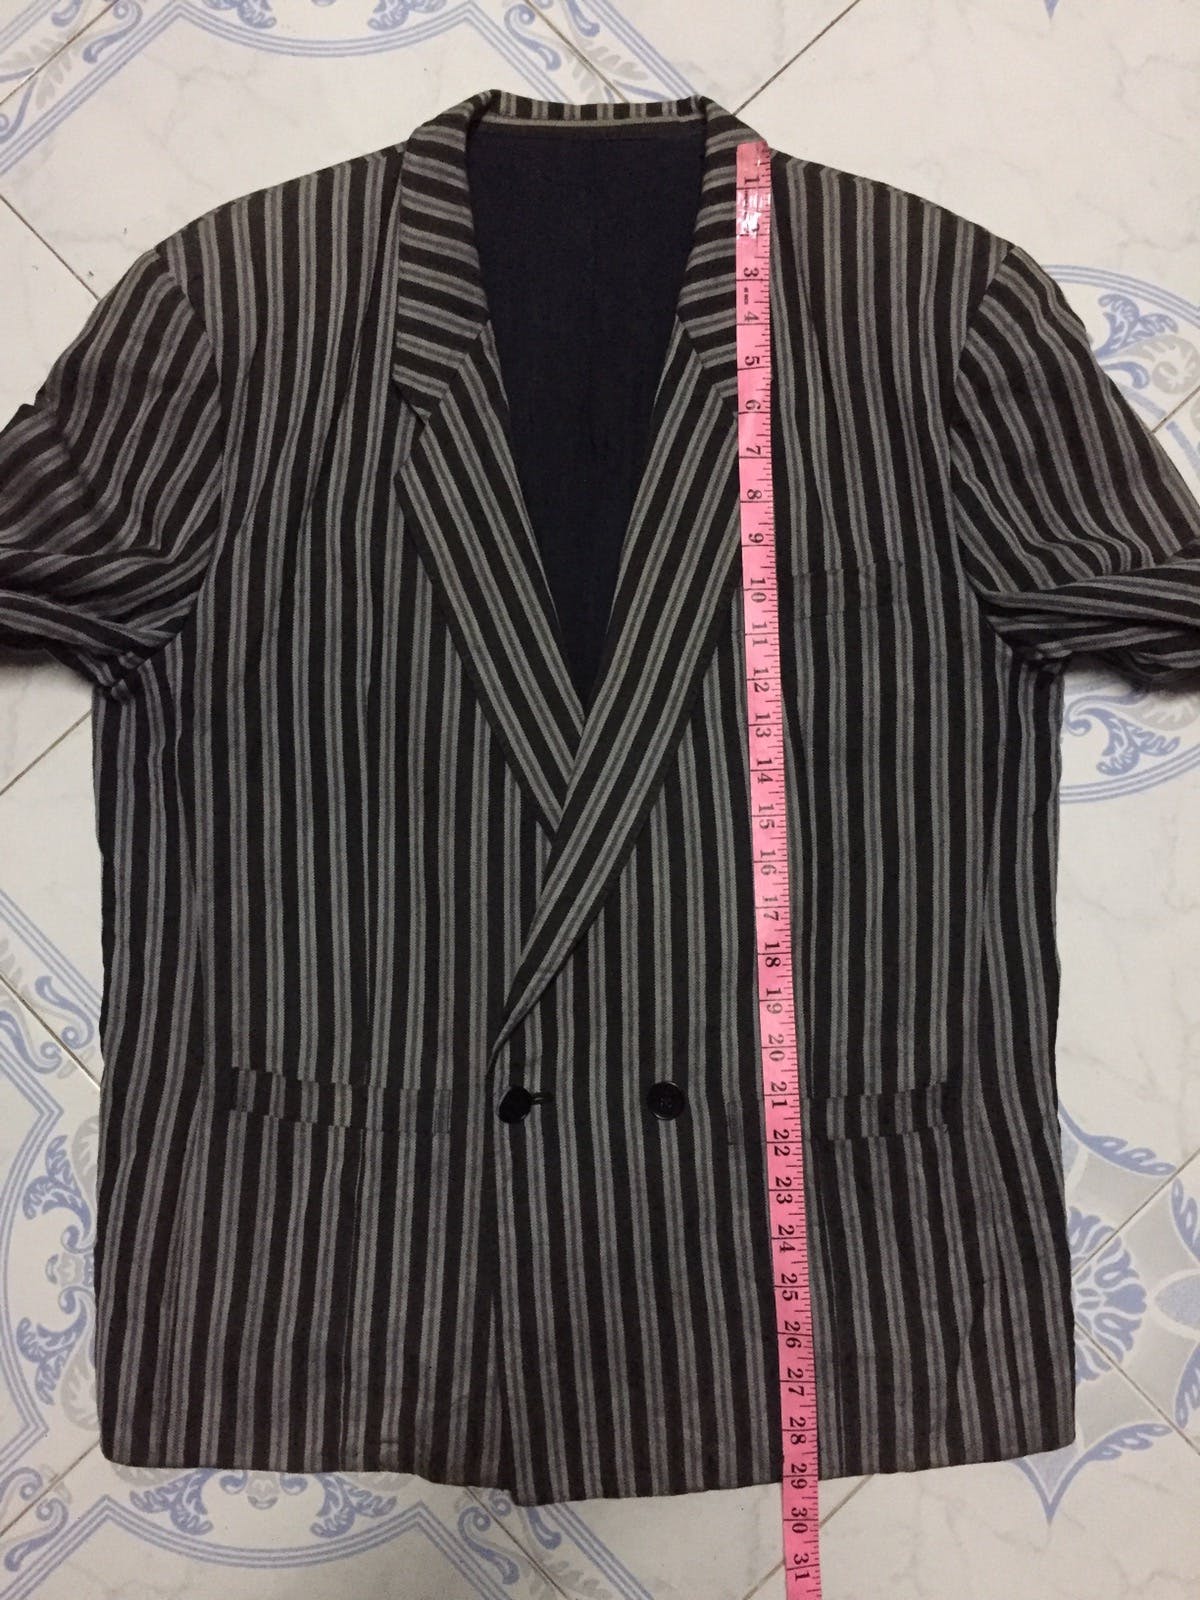 Kenzo Zebra Stripes Jacket Coat Made in Japan - 23